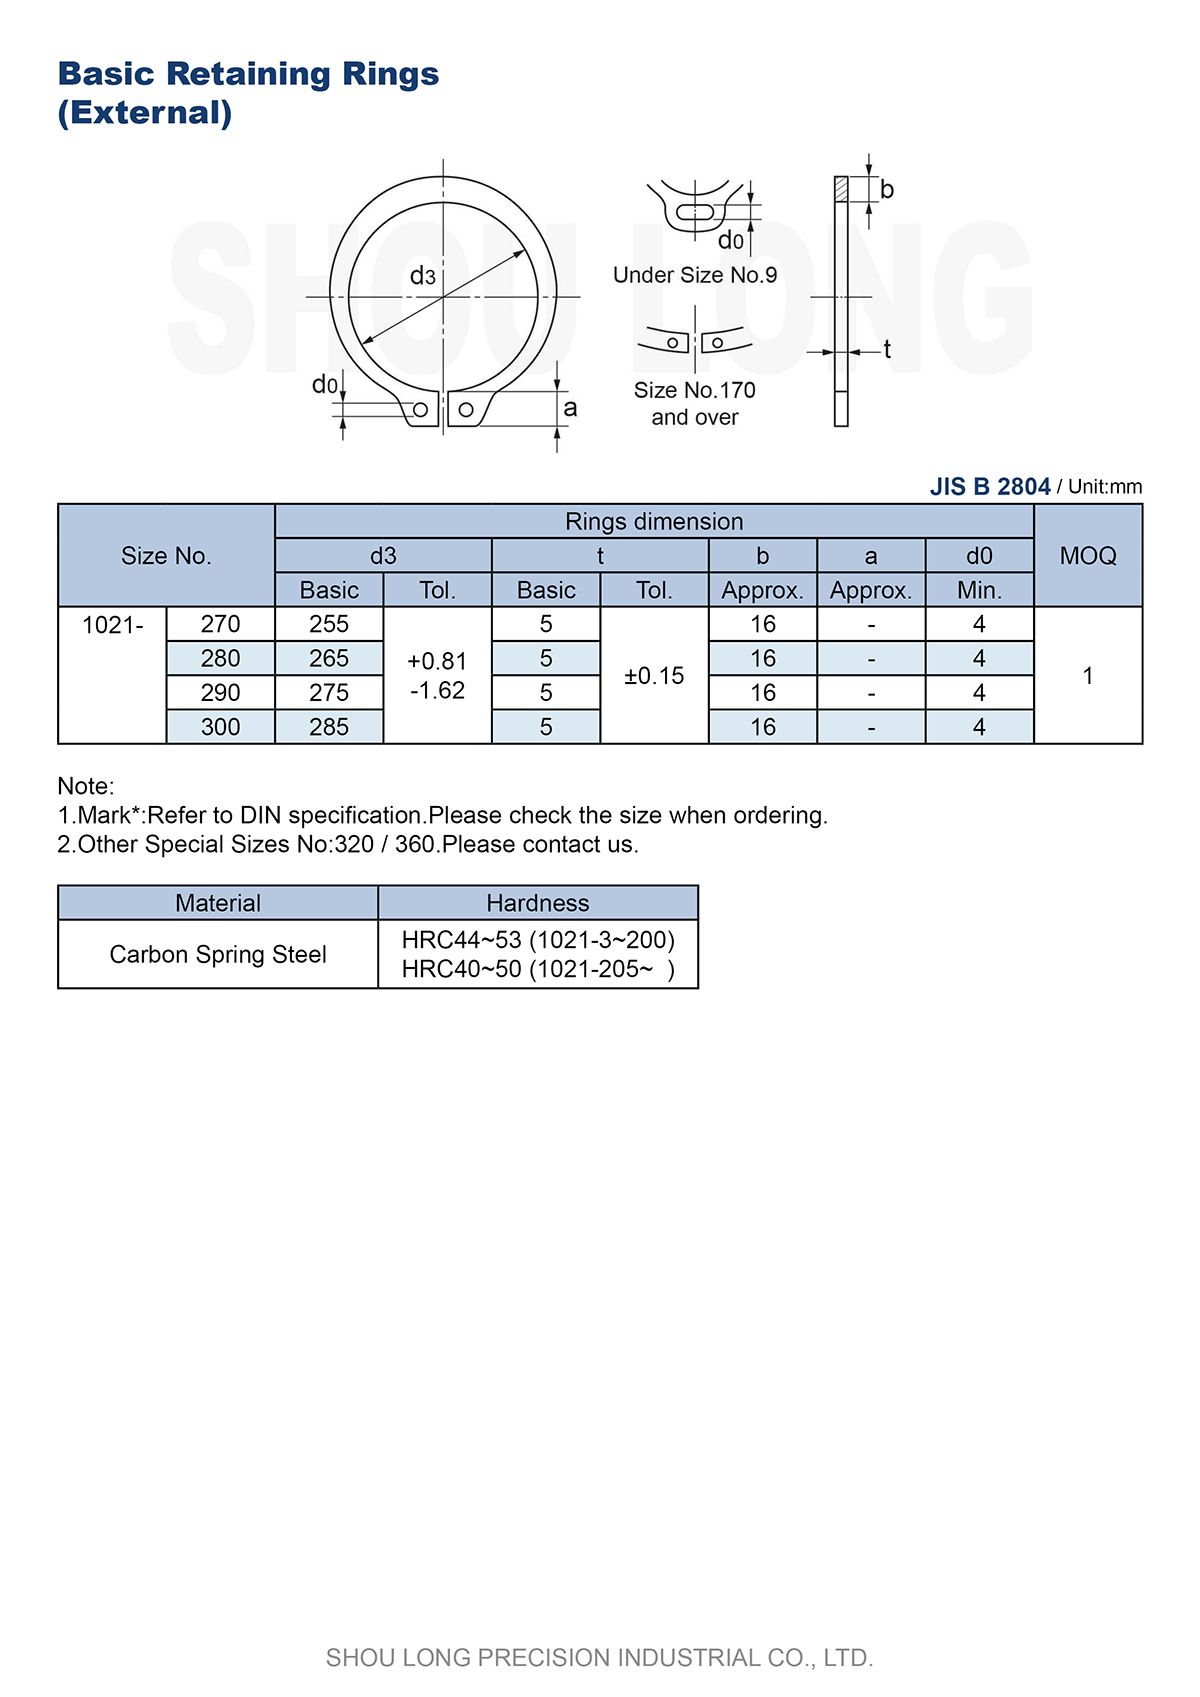 Specifikace metrických základních upevňovacích kroužků pro hřídel B2804-4 podle normy JIS